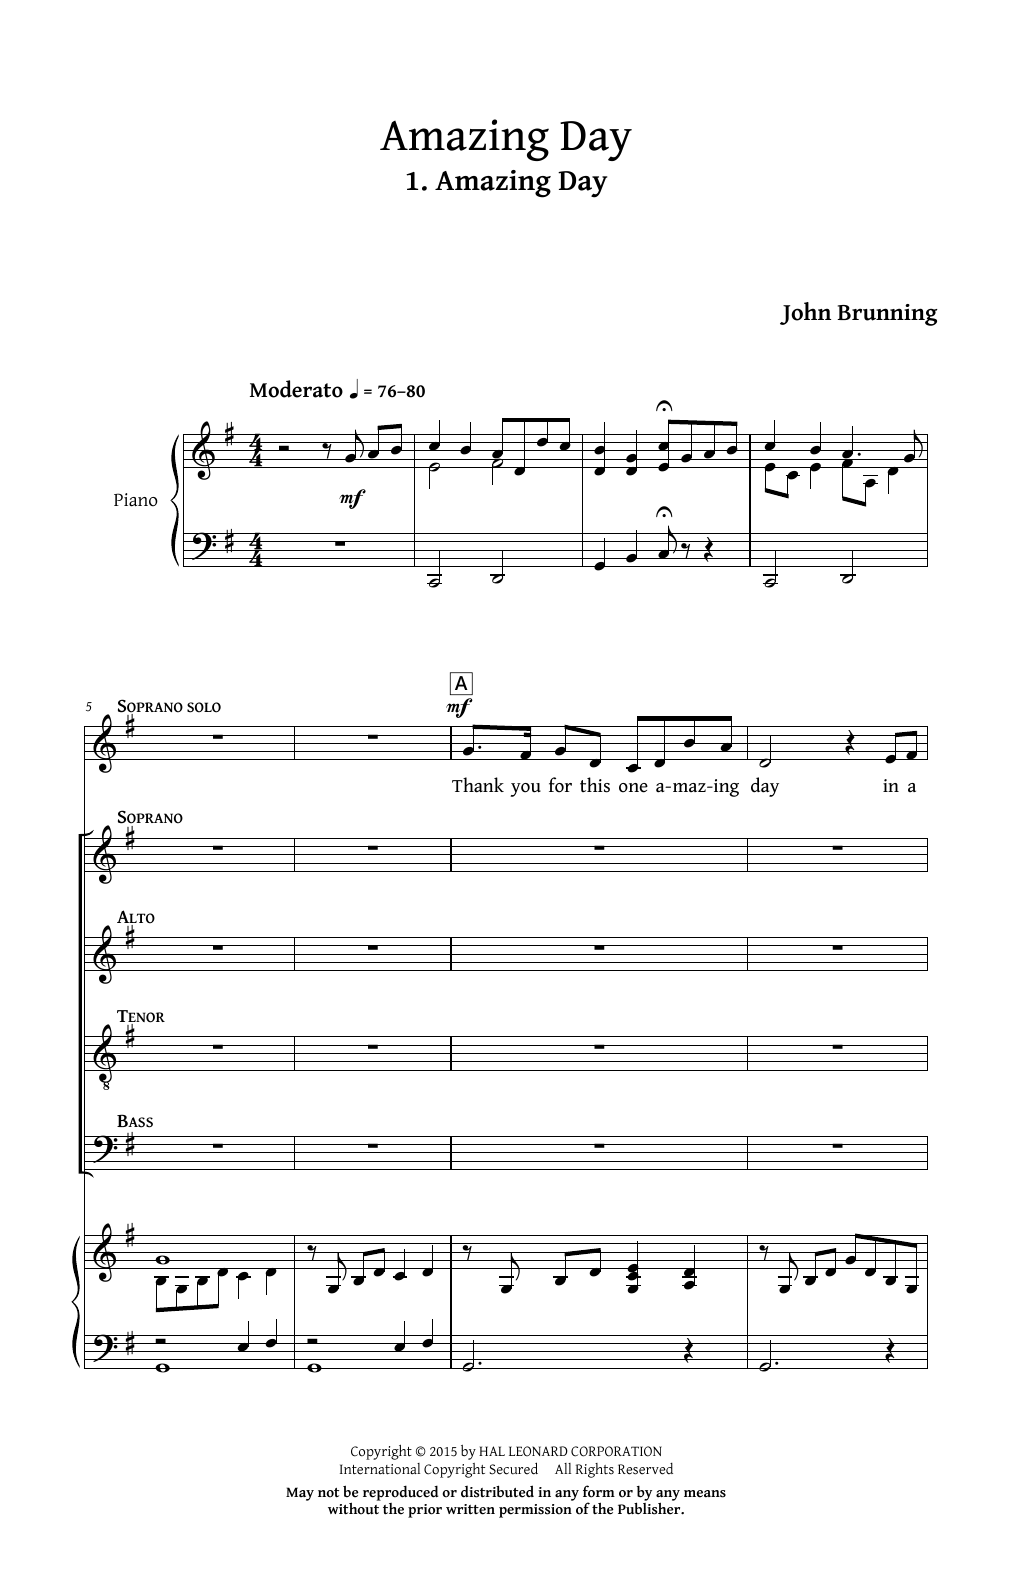 Download John Brunning Amazing Day Sheet Music